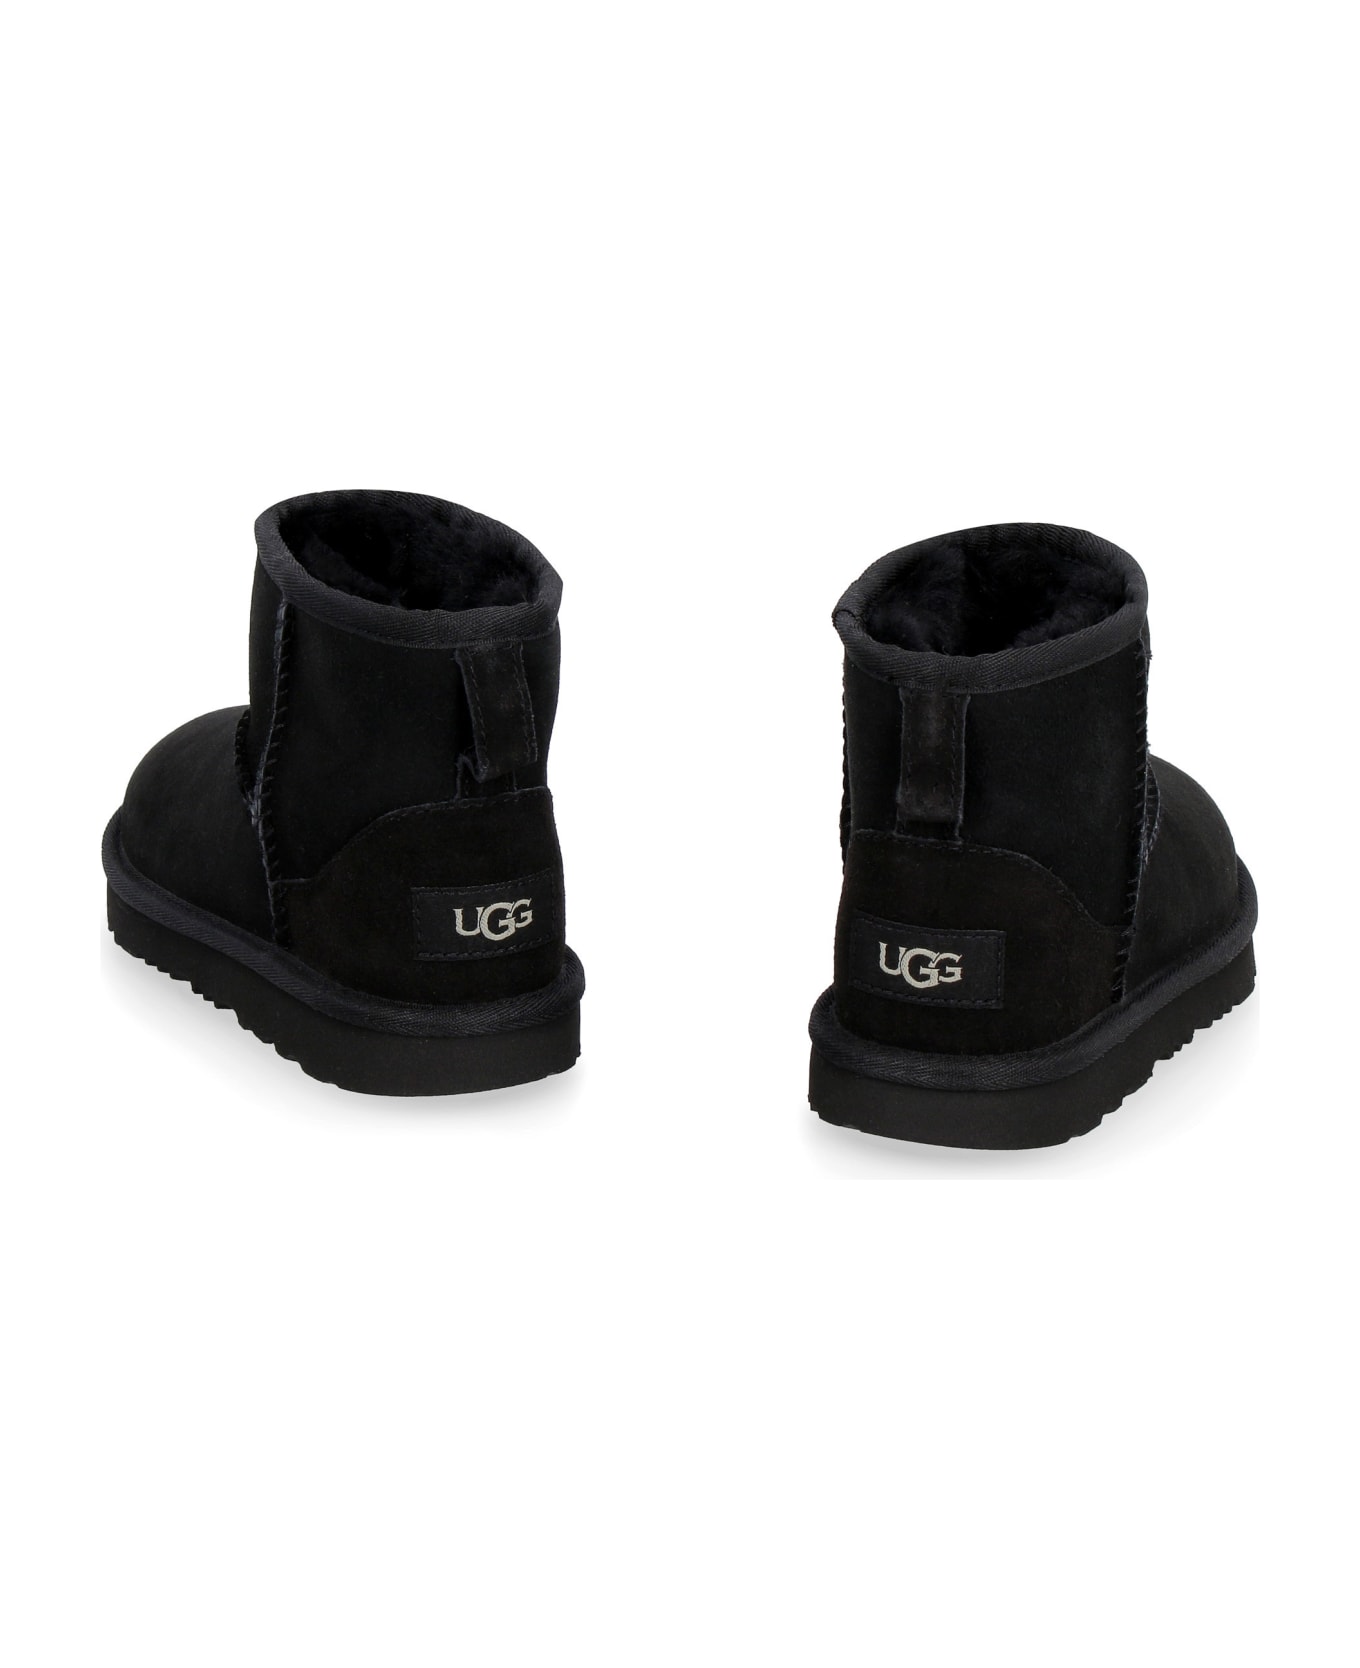 UGG Classic Mini Ii Boots - Black